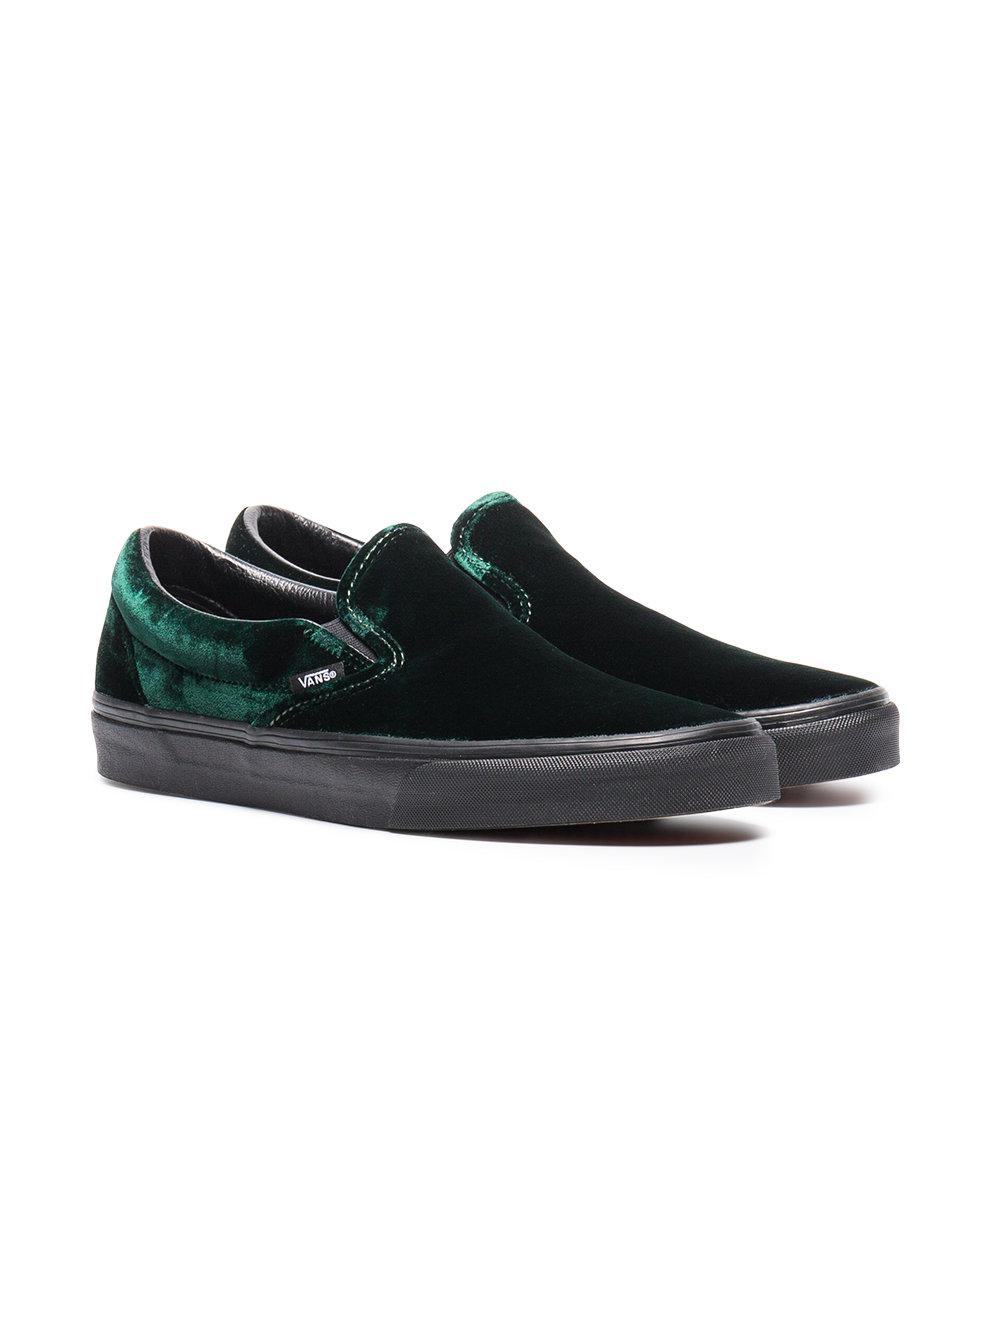 Vans Velvet Classic Slip-on Shoes in Green for Men - Lyst